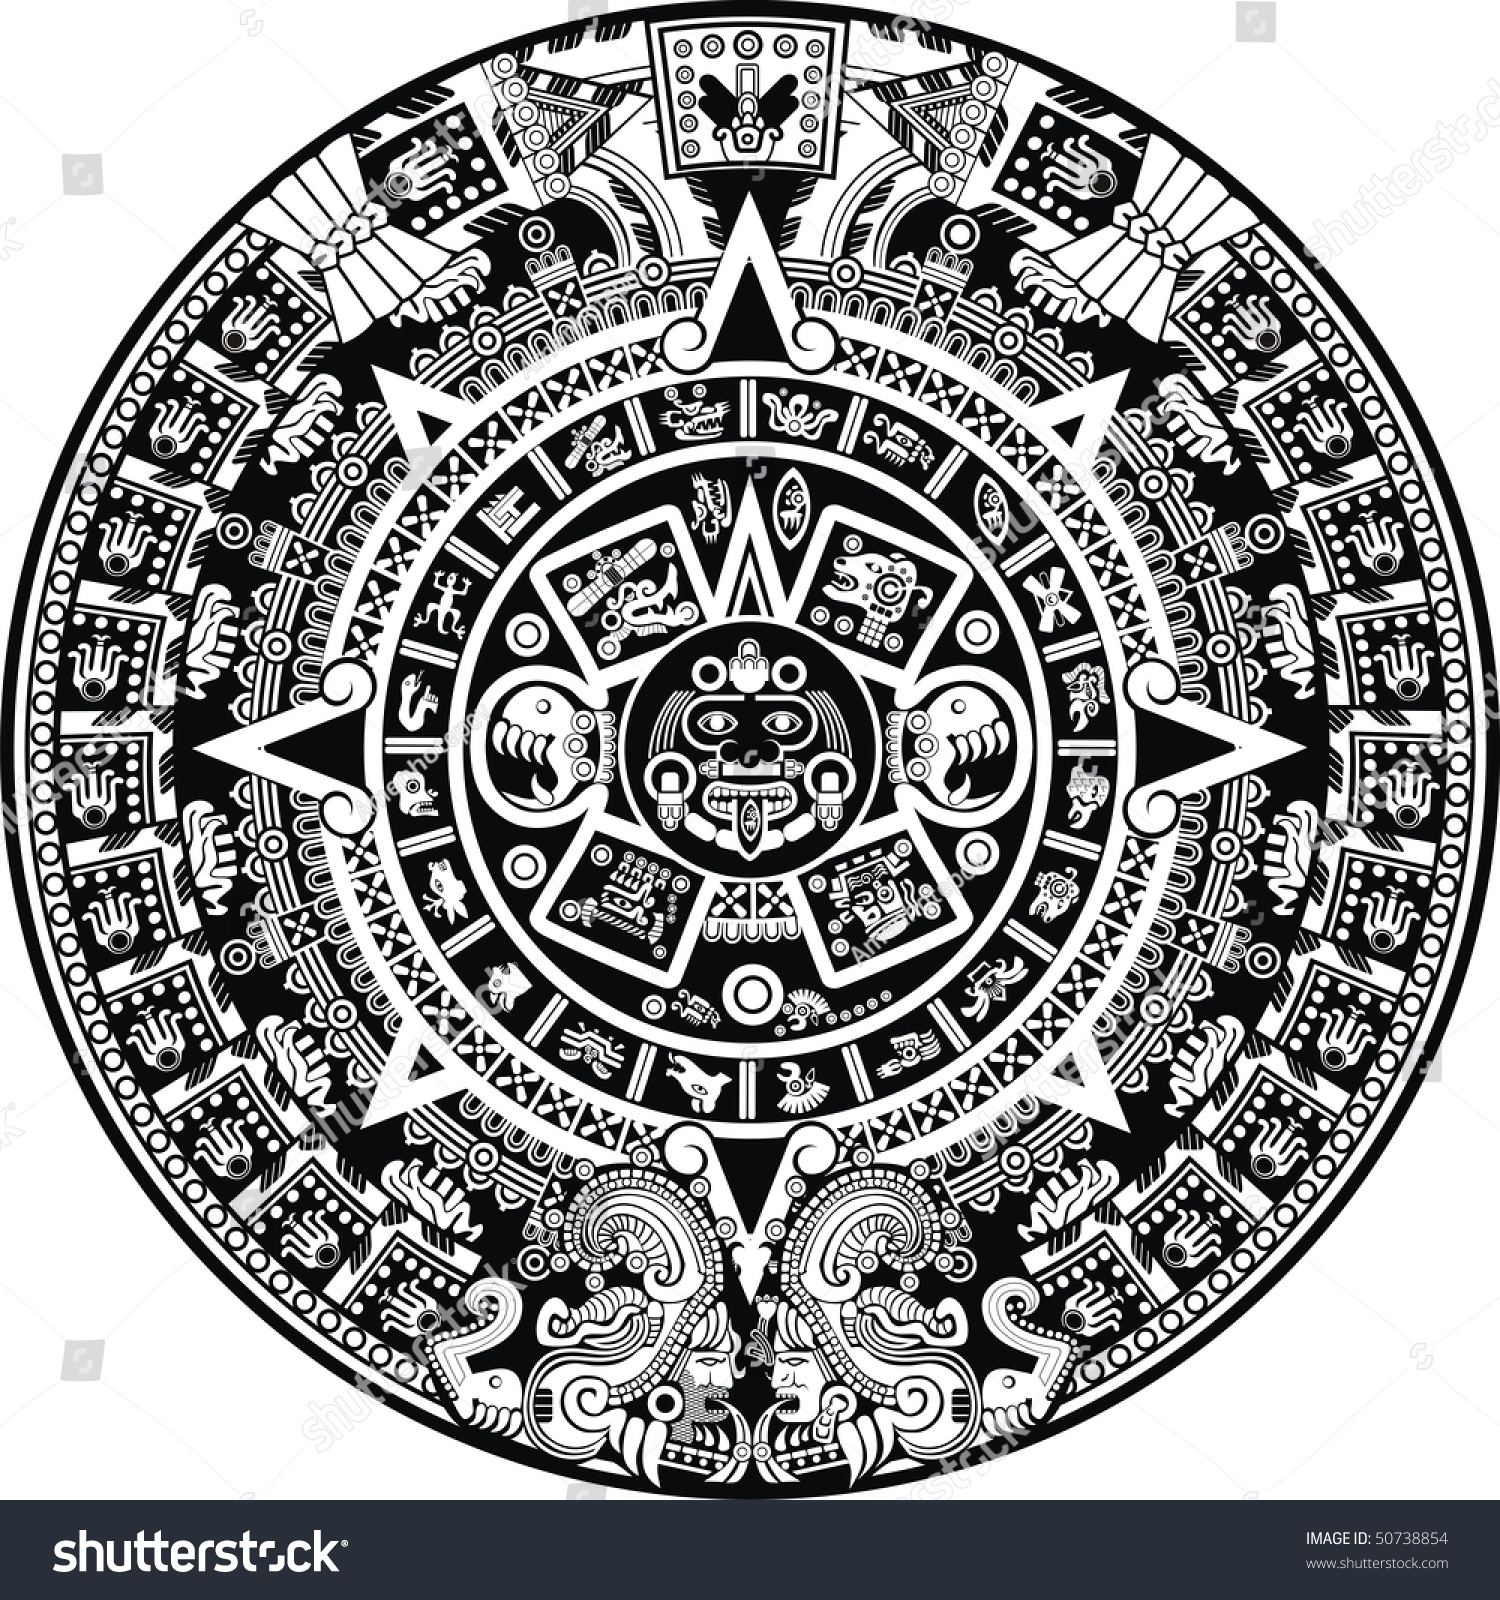 Vector Aztec Calendar - Customize and Print